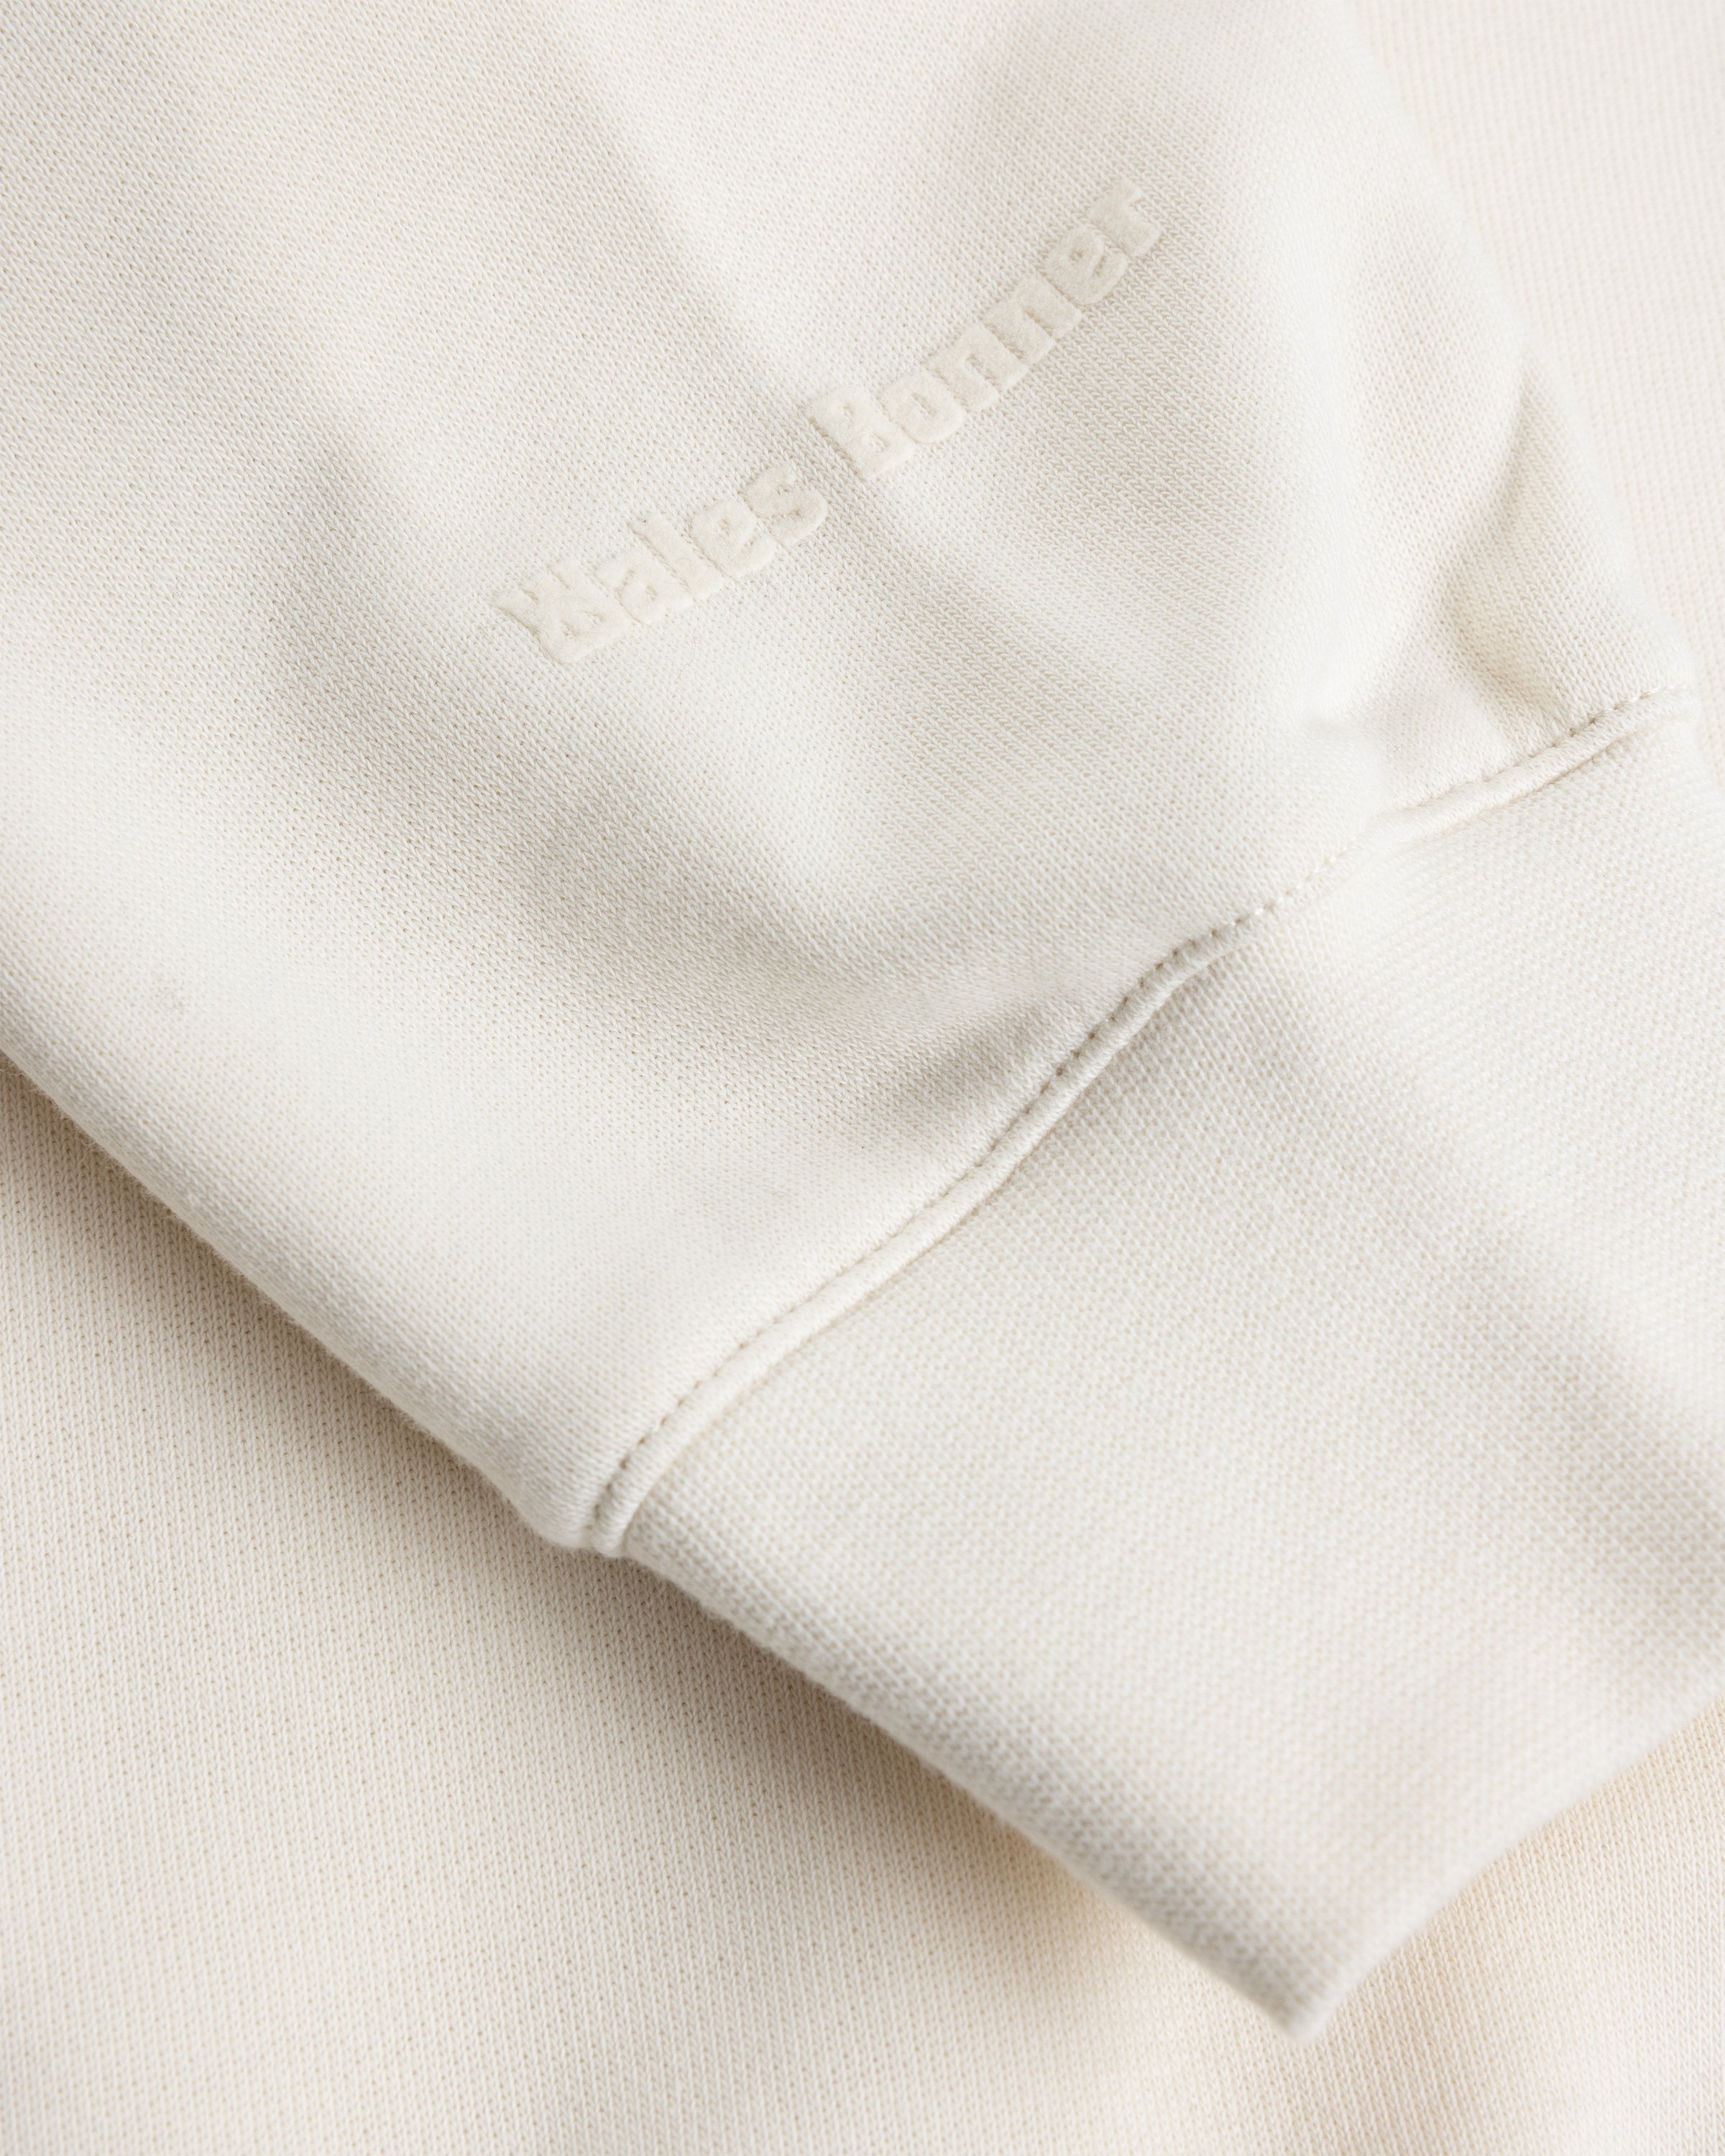 Adidas x Wales Bonner - Crewneck Sweater Wonder White - Clothing - Beige - Image 6